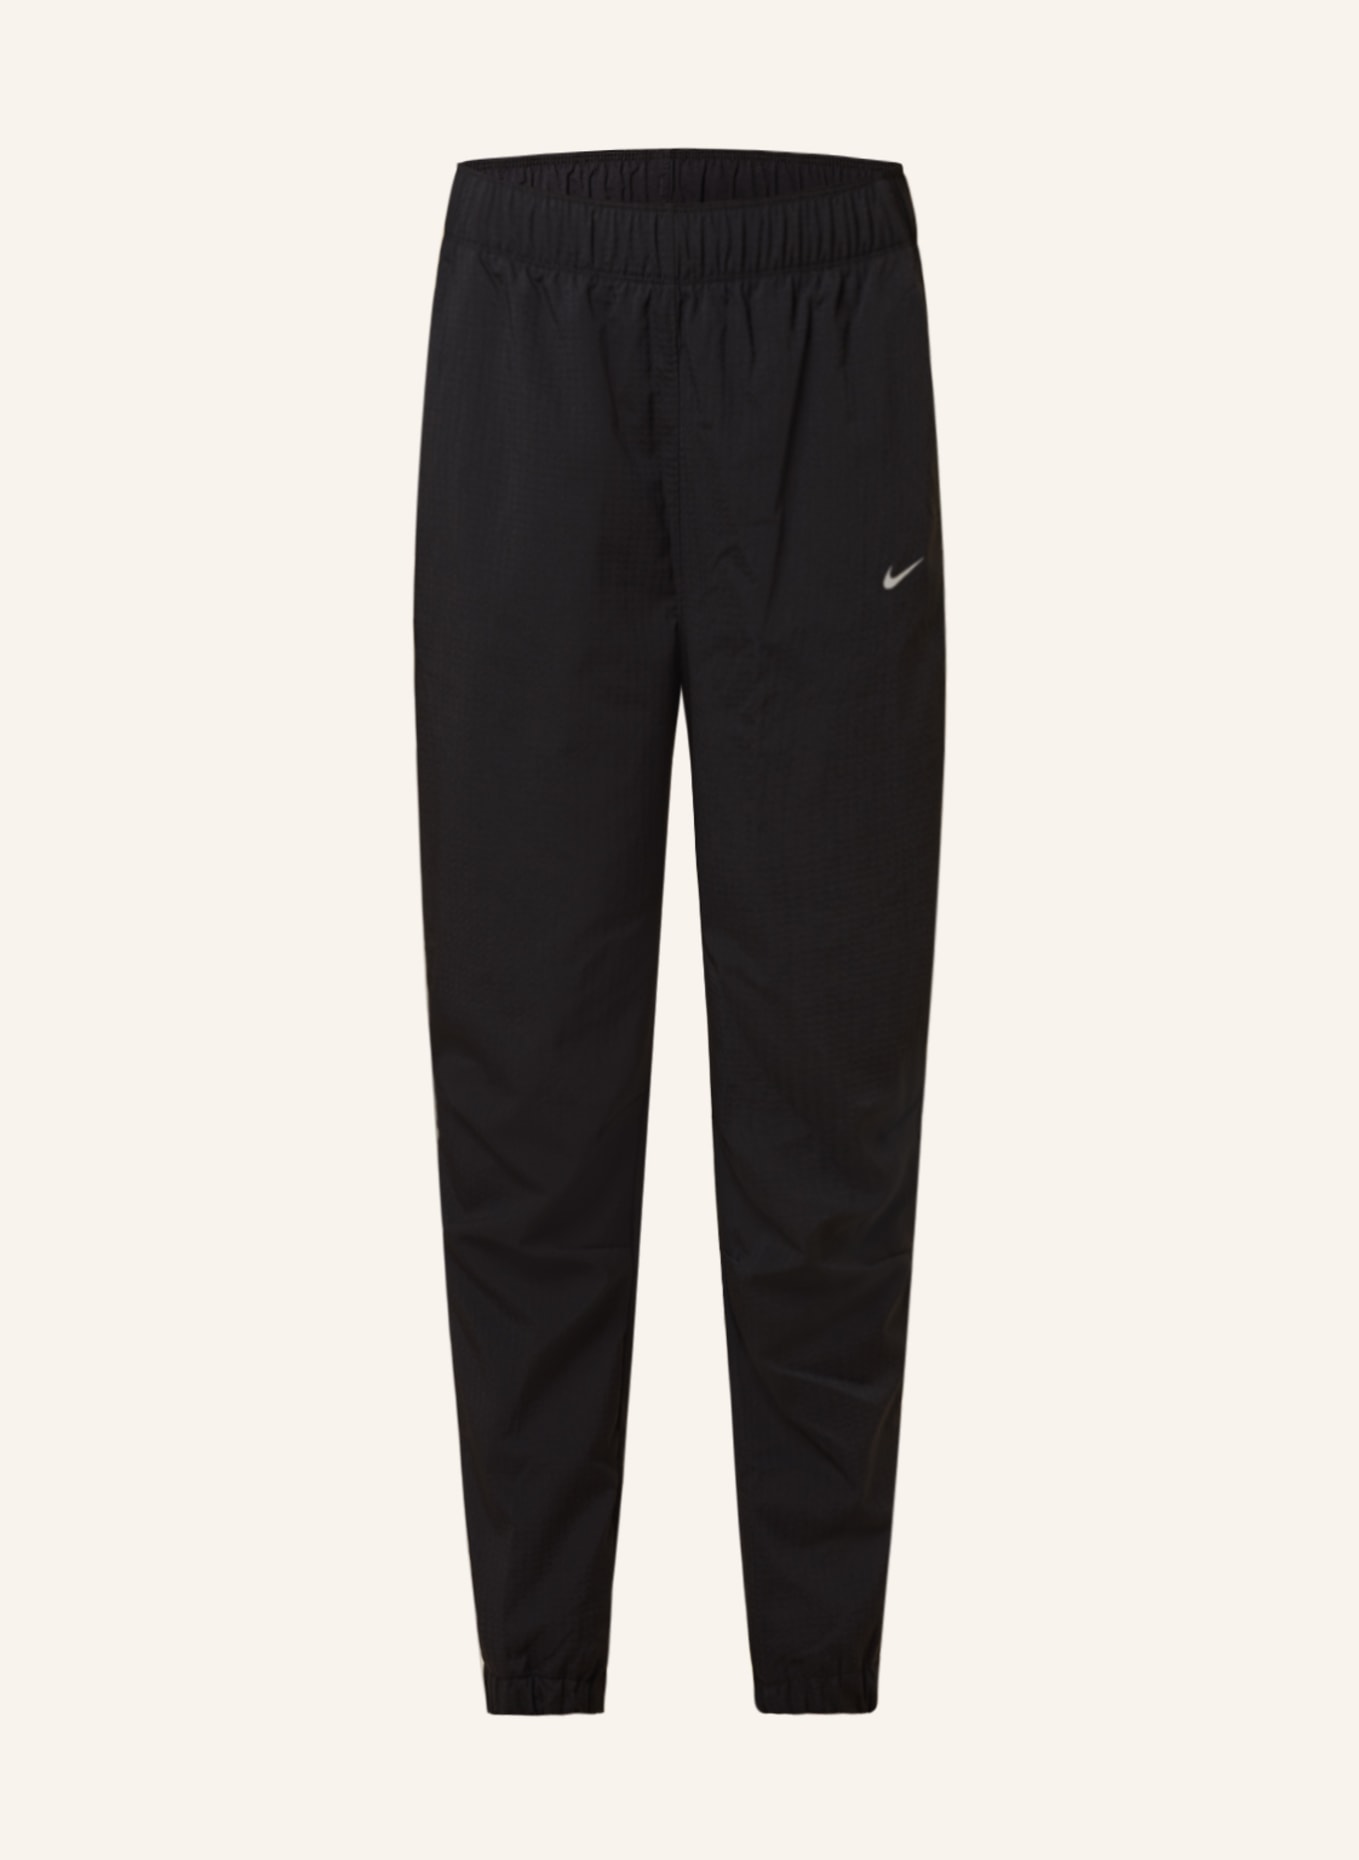 Nike 7/8 running pants DRI-FIT FAST in black